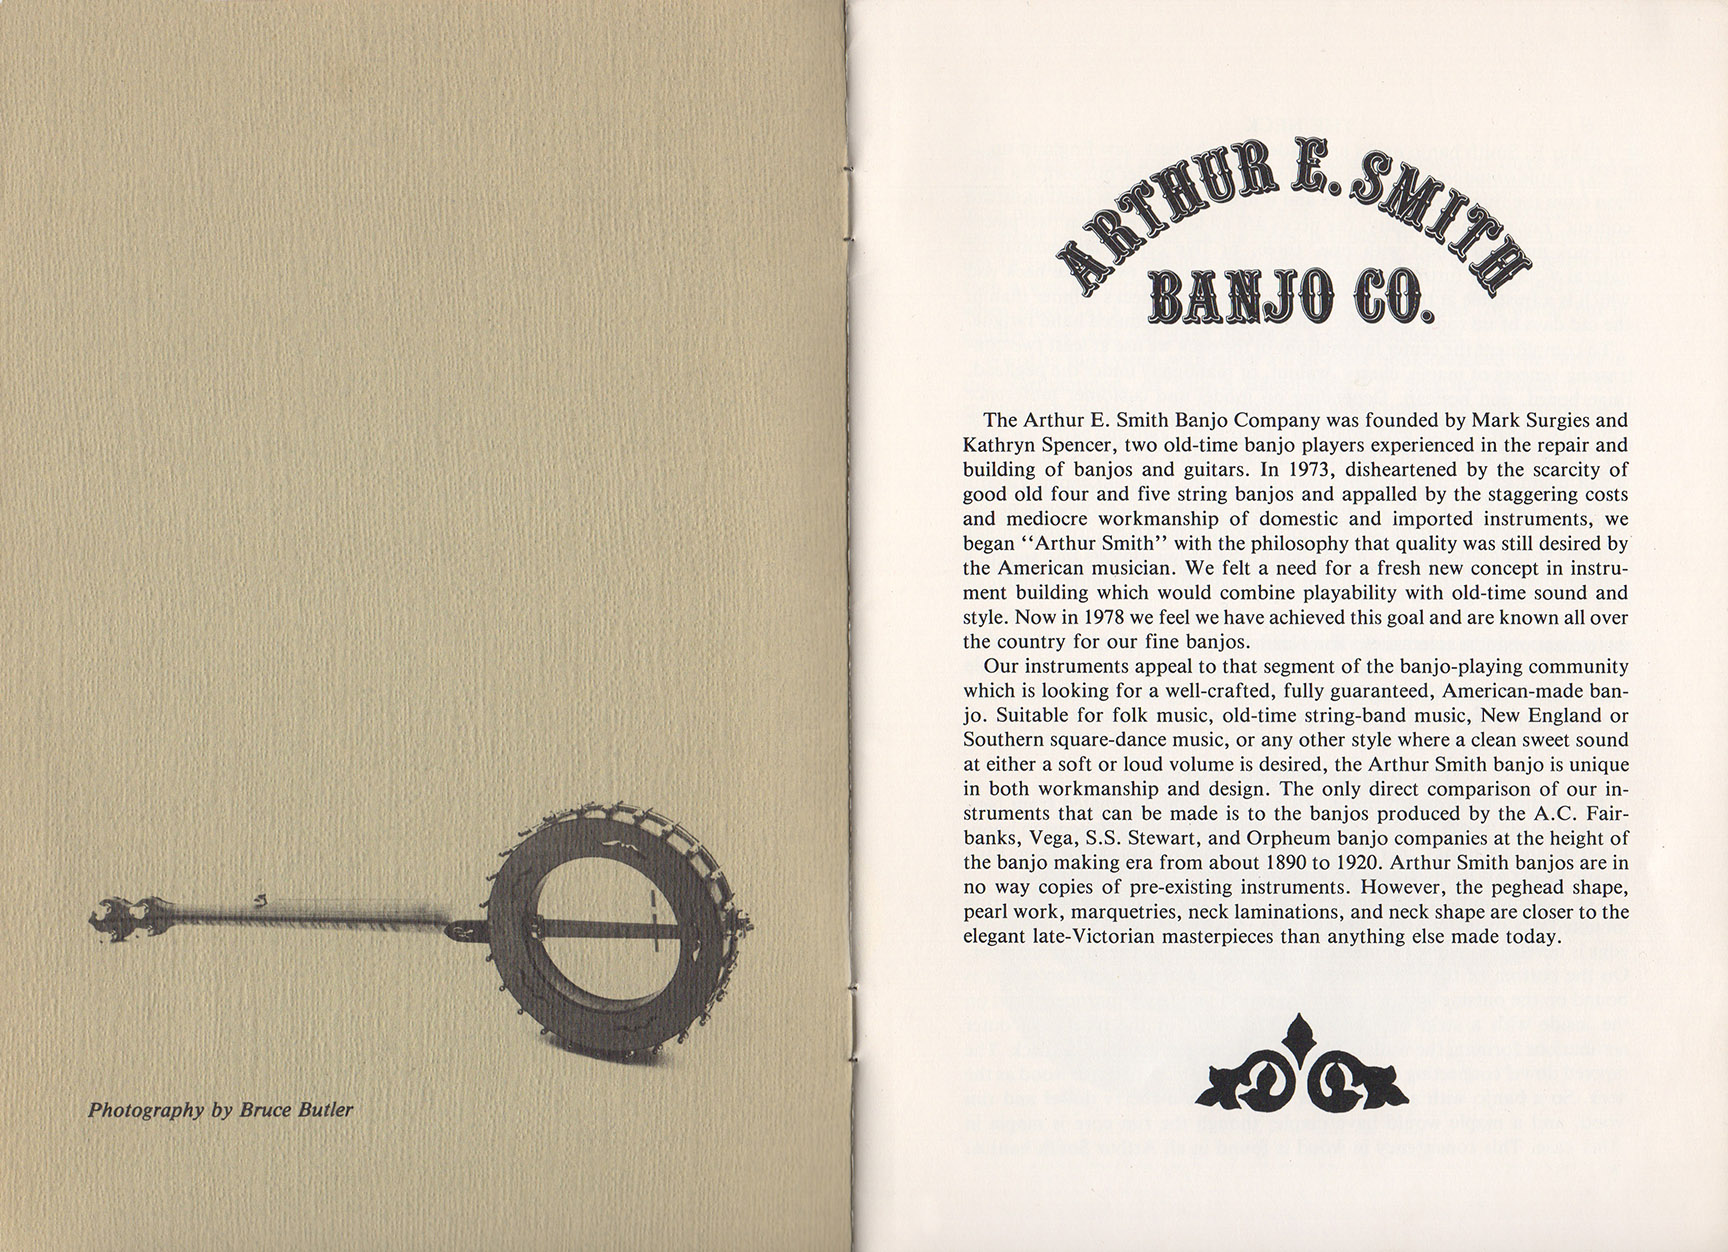 A-E-Smith-Banjo-Company-Catalog-page1-LR